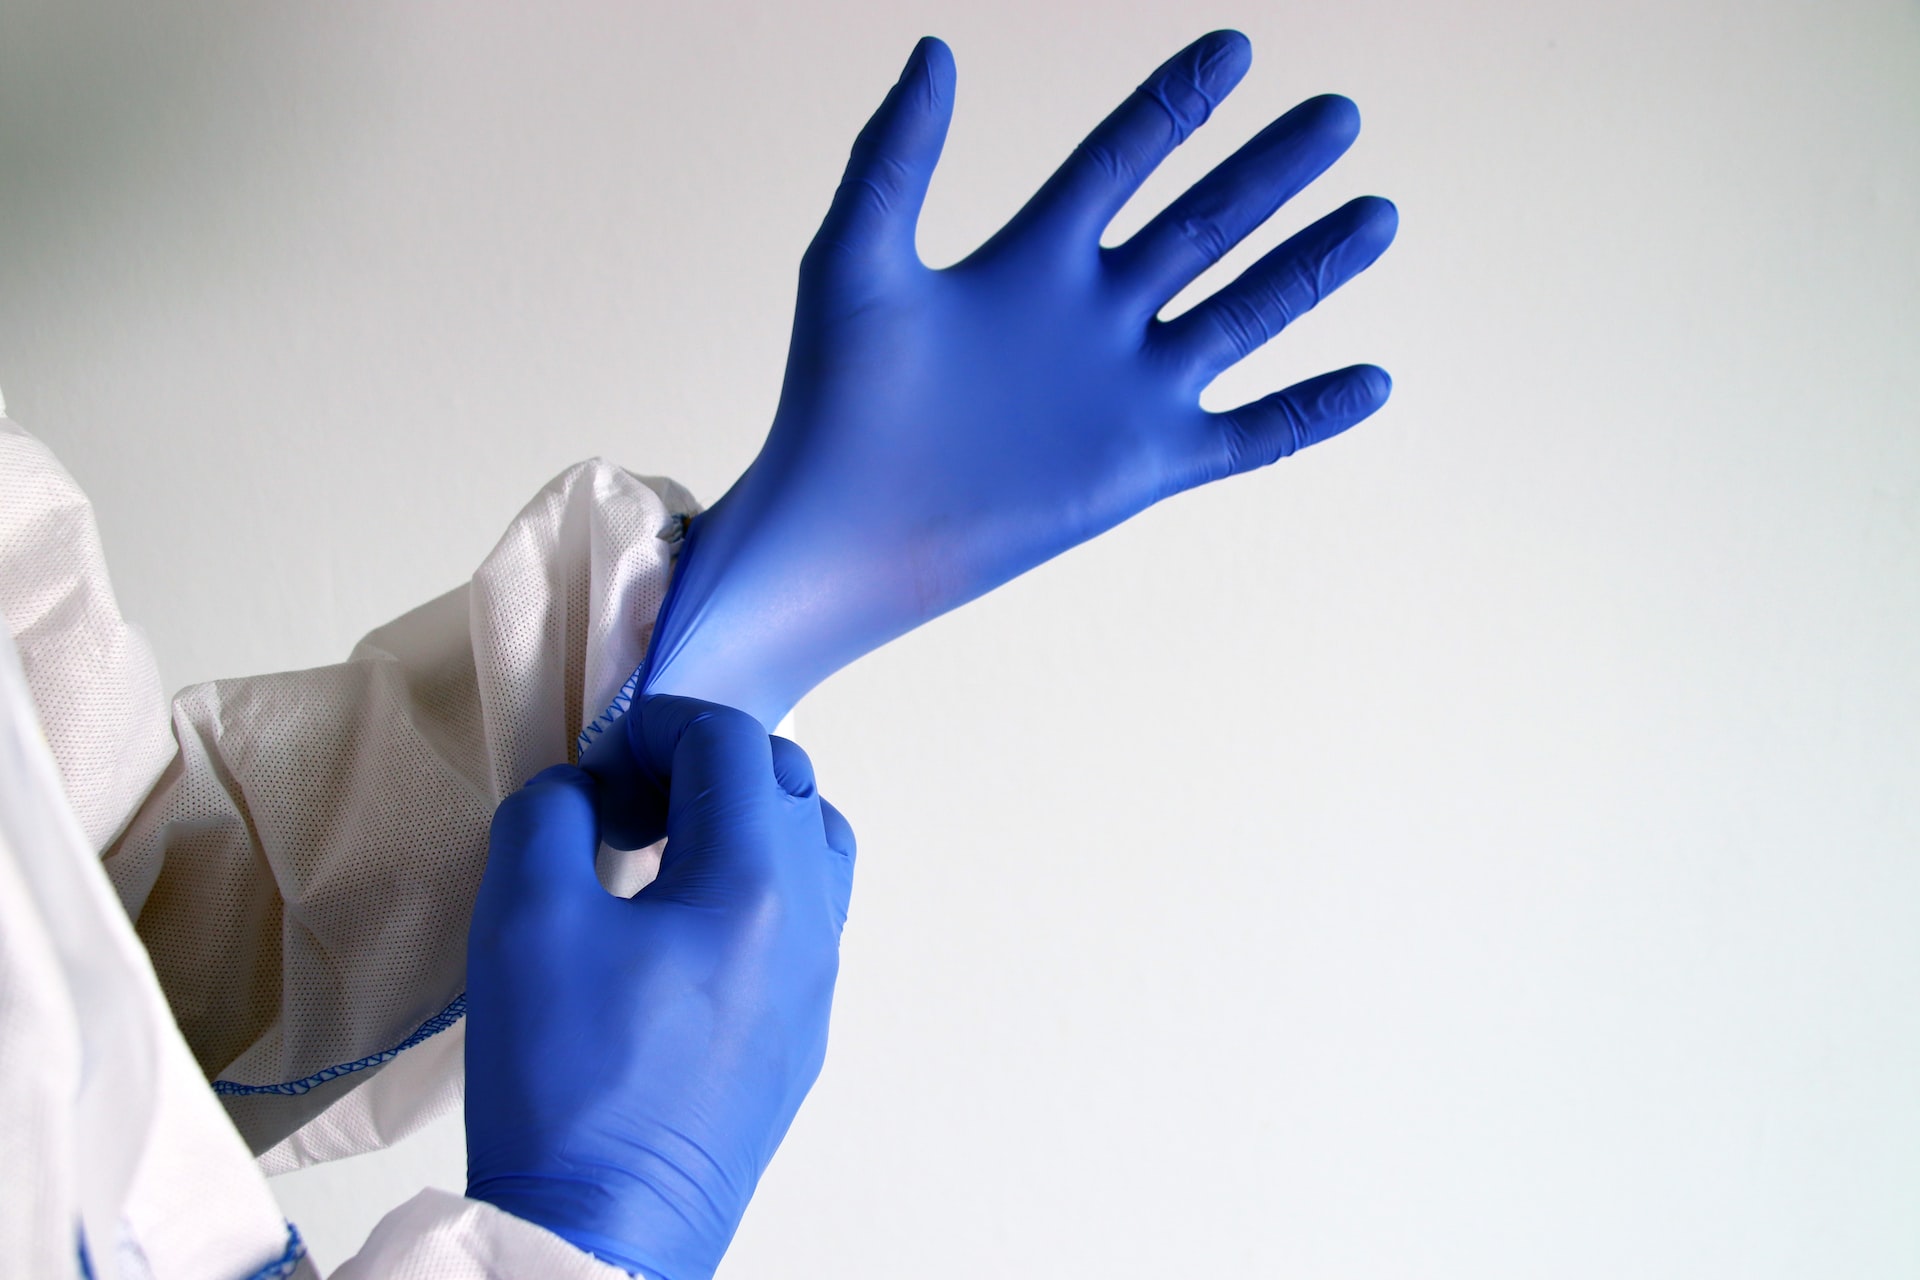 Изображение медицинских перчаток для статьи на тему разработки бизнес-плана производства медицинских перчаток